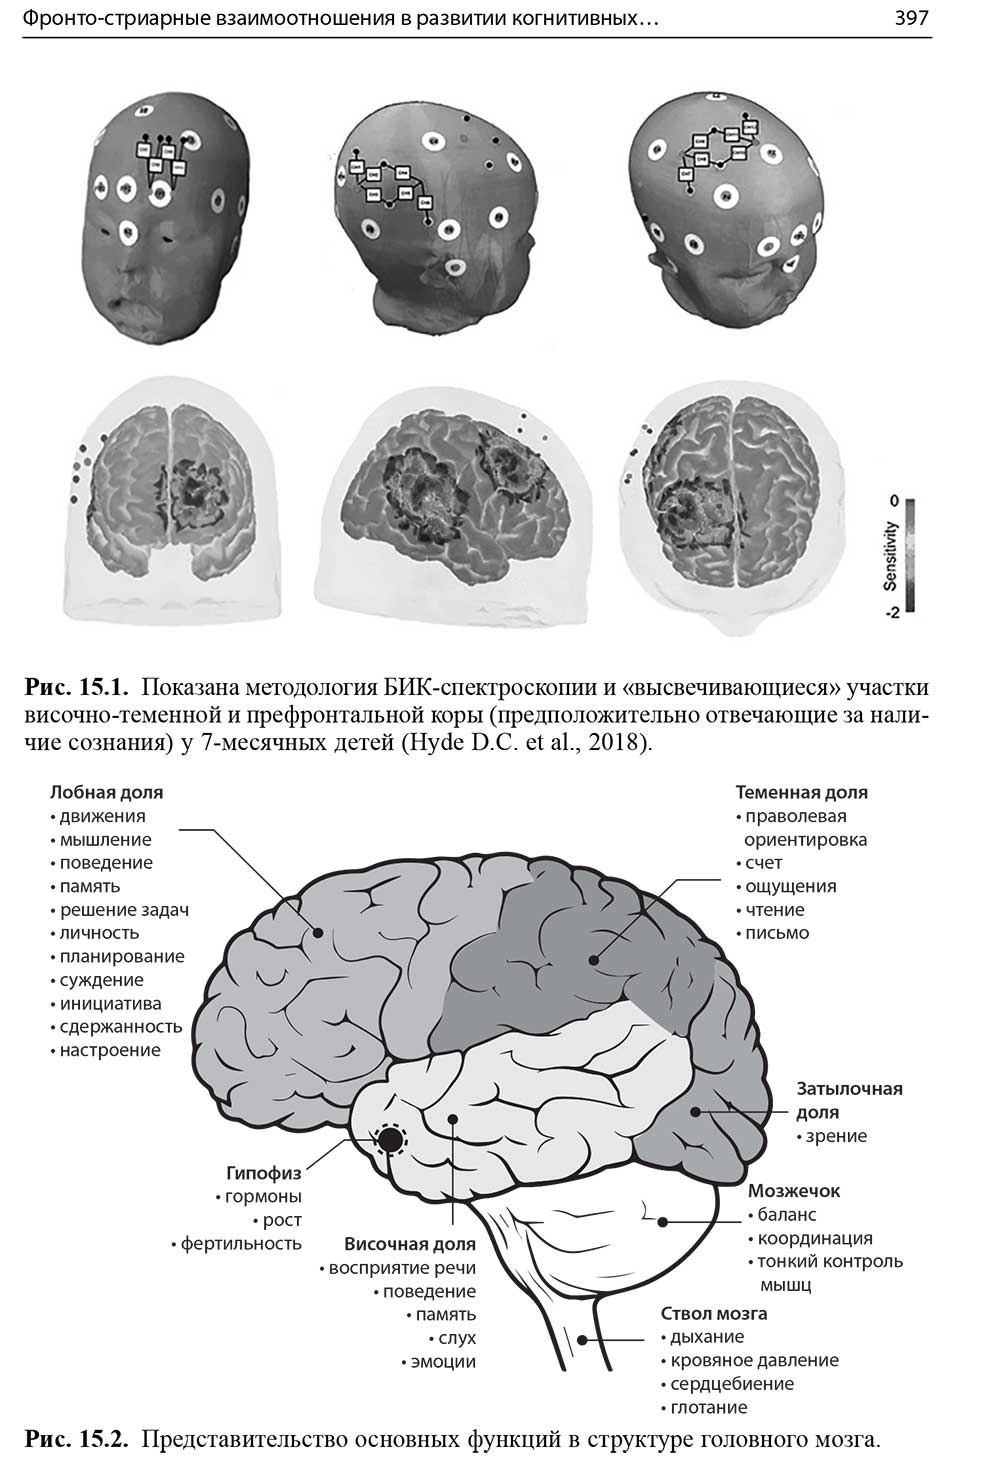 Представительство основных функций в структуре головного мозга.